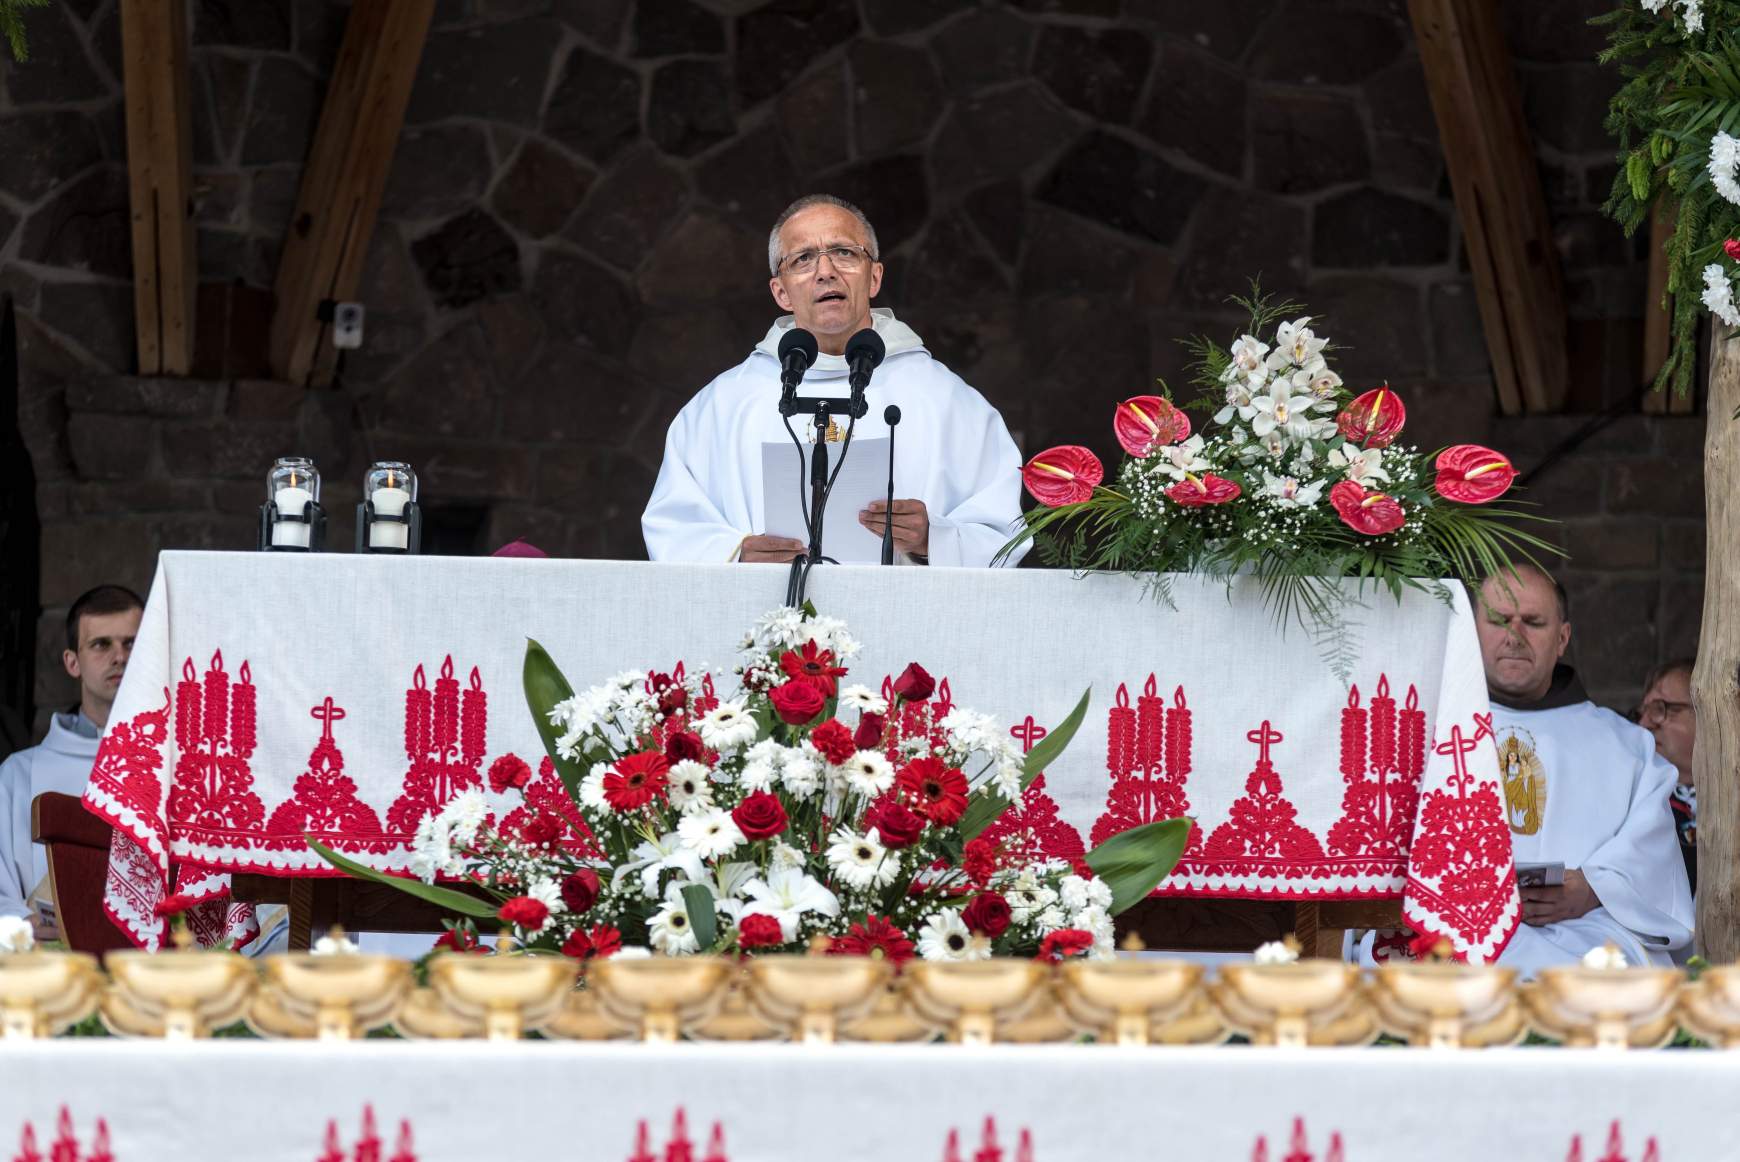 Csíksomlyó, 2018. május 19. Marian Adam Waligóra pálos szerzetes, a czestochowai Jasna Góra-i pálos kolostor házfőnöke szentmisét celebrál a csíksomlyói búcsún, a Kis- és Nagysomlyó-hegy közötti hegynyergen 2018. május 19-én.